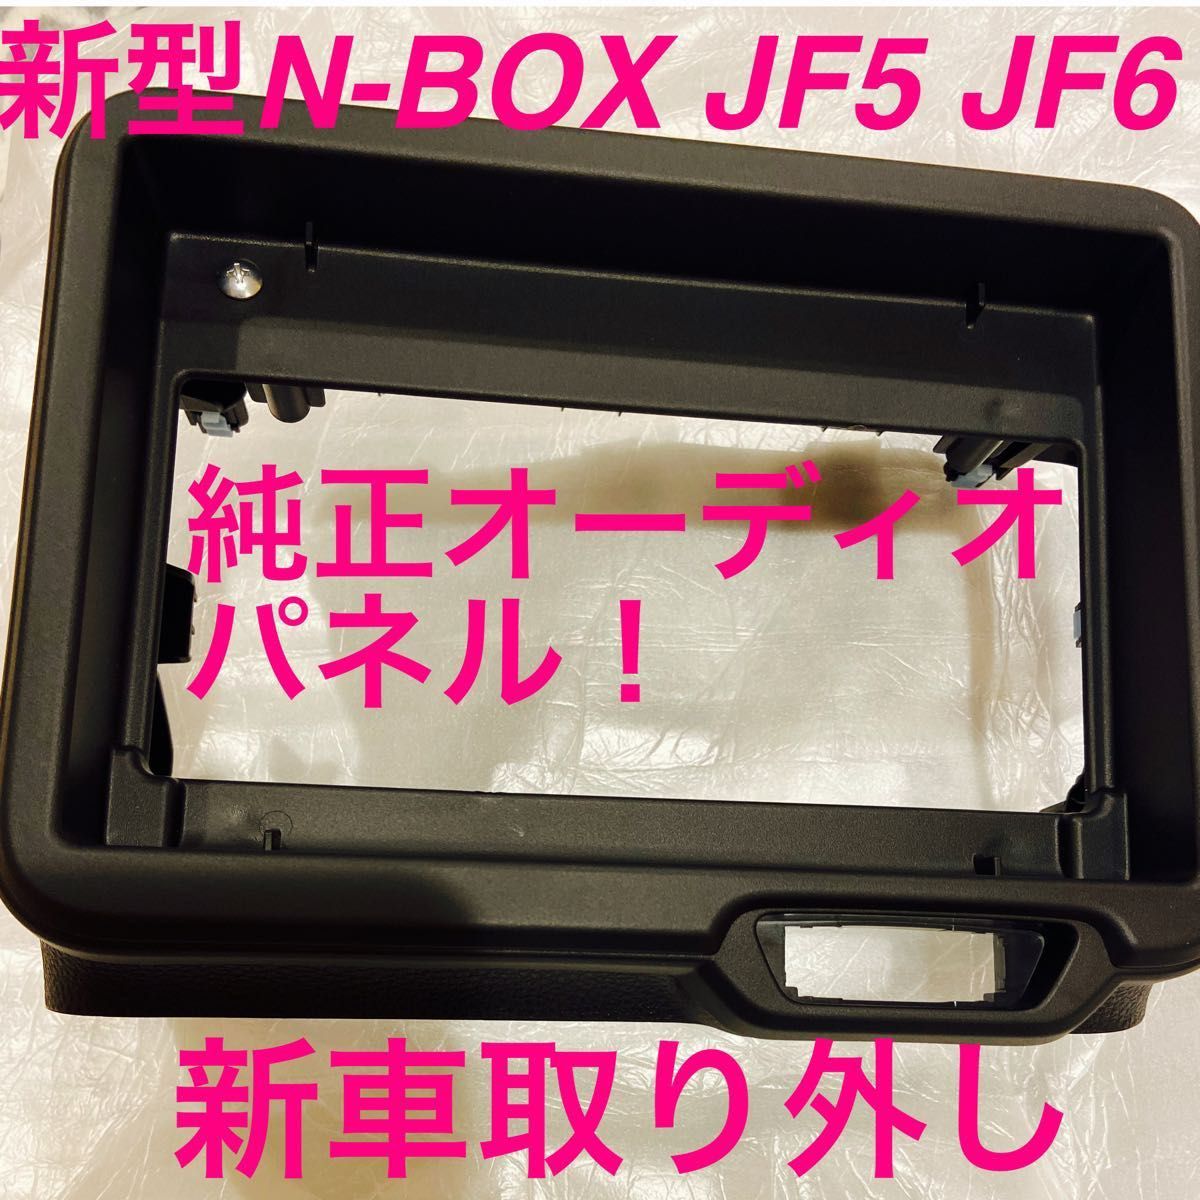 新型N-BOX JF5 JF6 新品、未使用品、純正オーディオパネル 新車外し